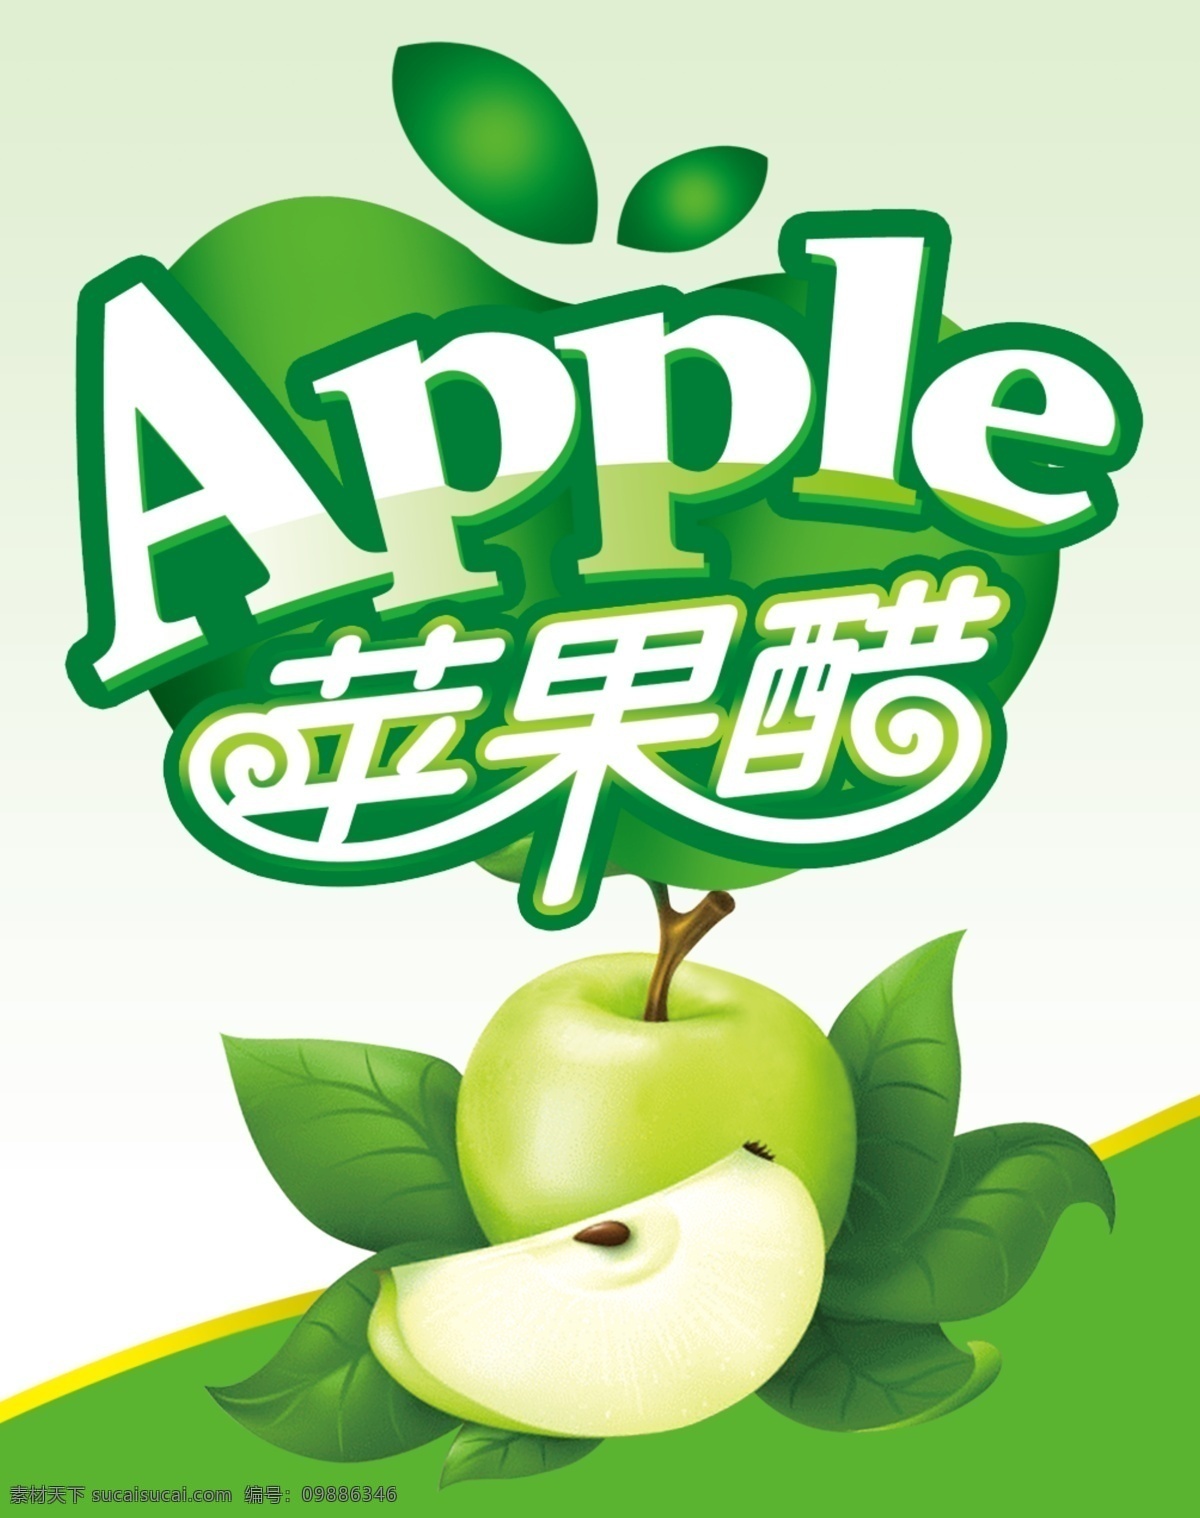 苹果醋 apple 醋 苹果 商标图案 苹果醋商标 商标图片 psd源文件